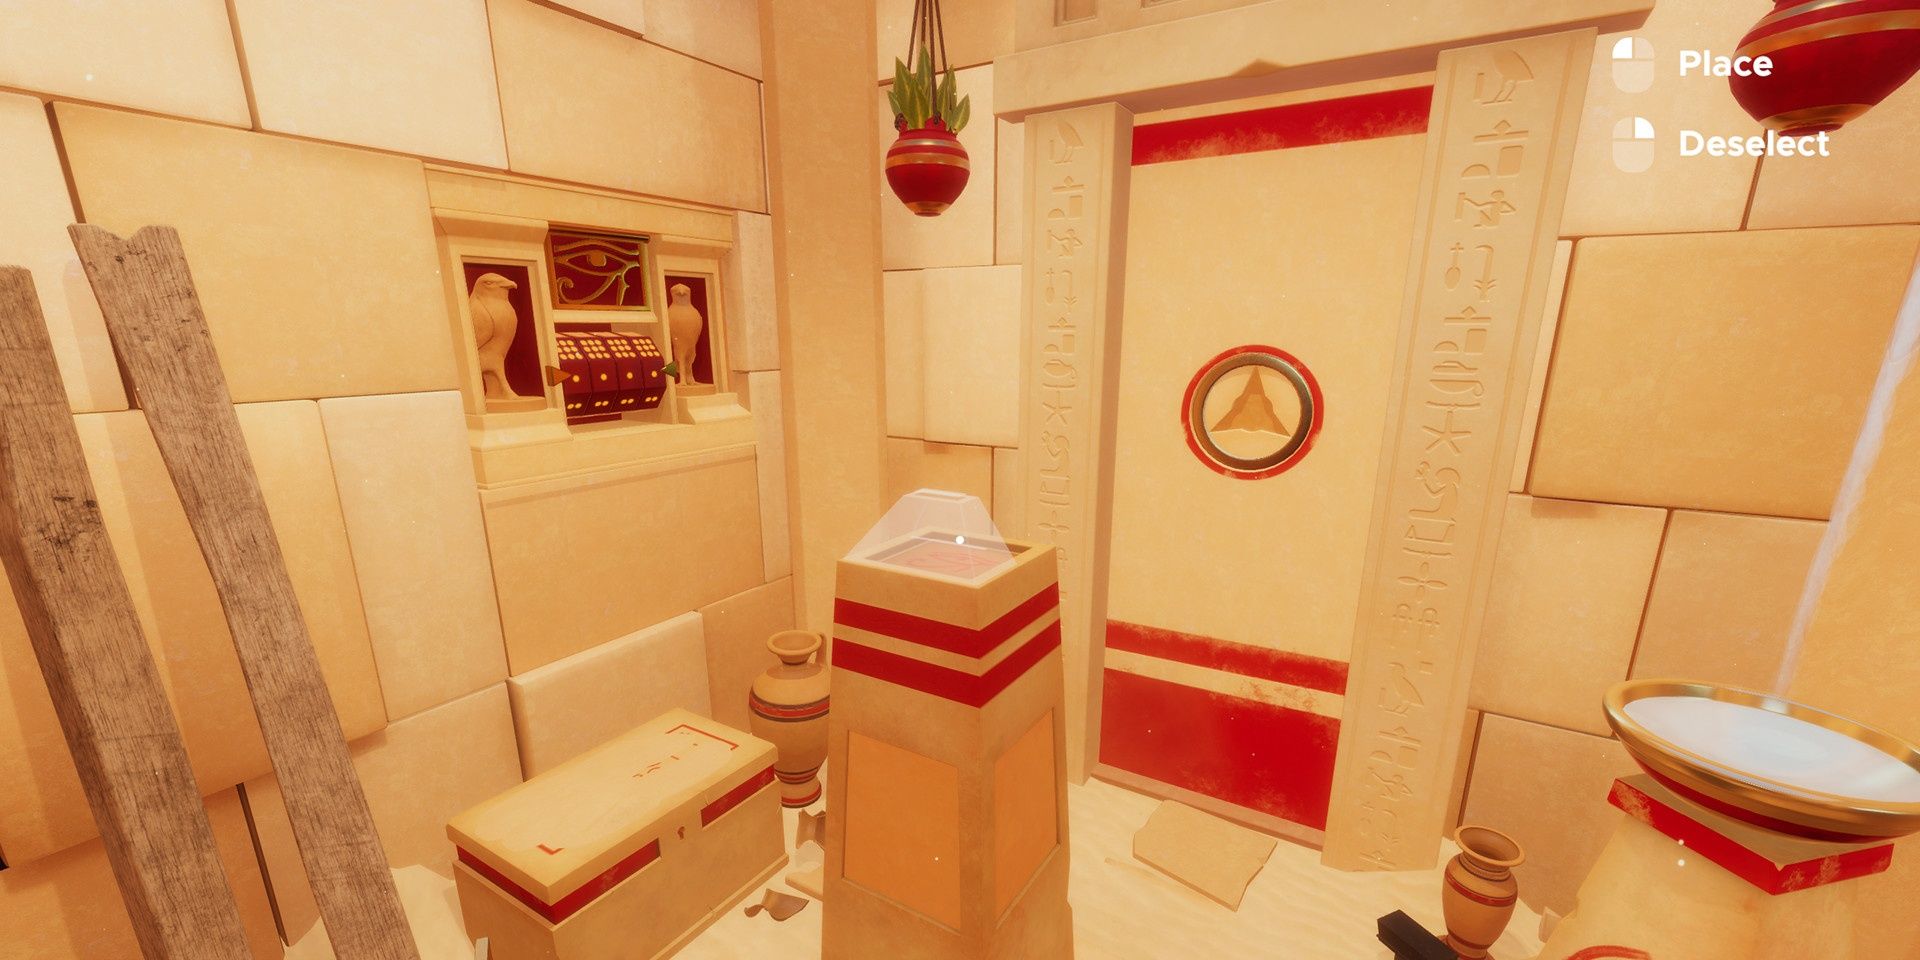 An escape room themed like a desert temple in Escape Simulator